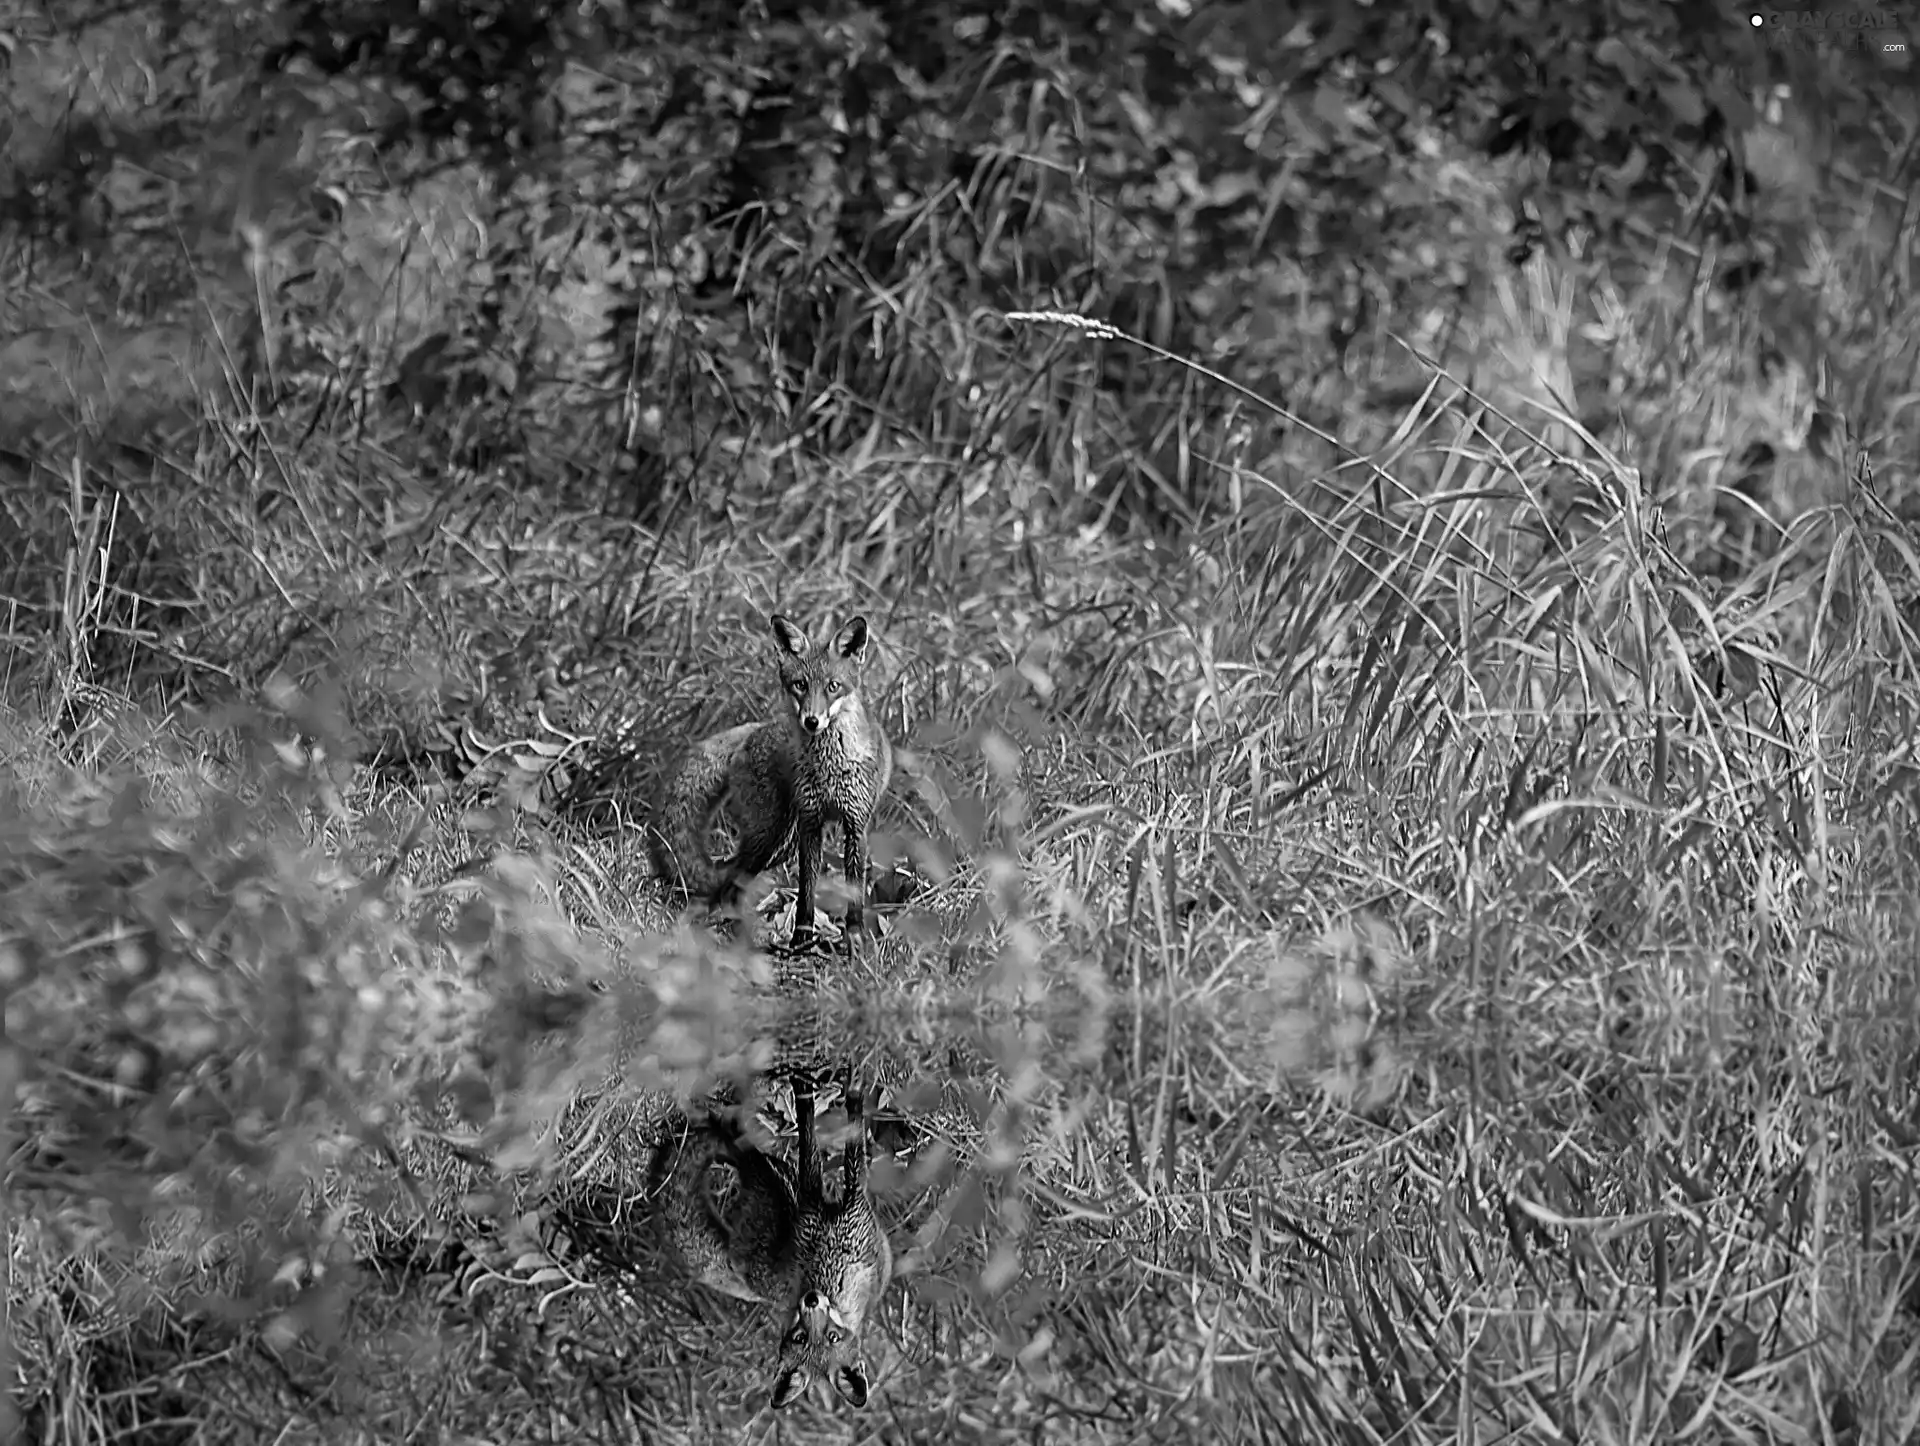 Fox, water, reflection, grass